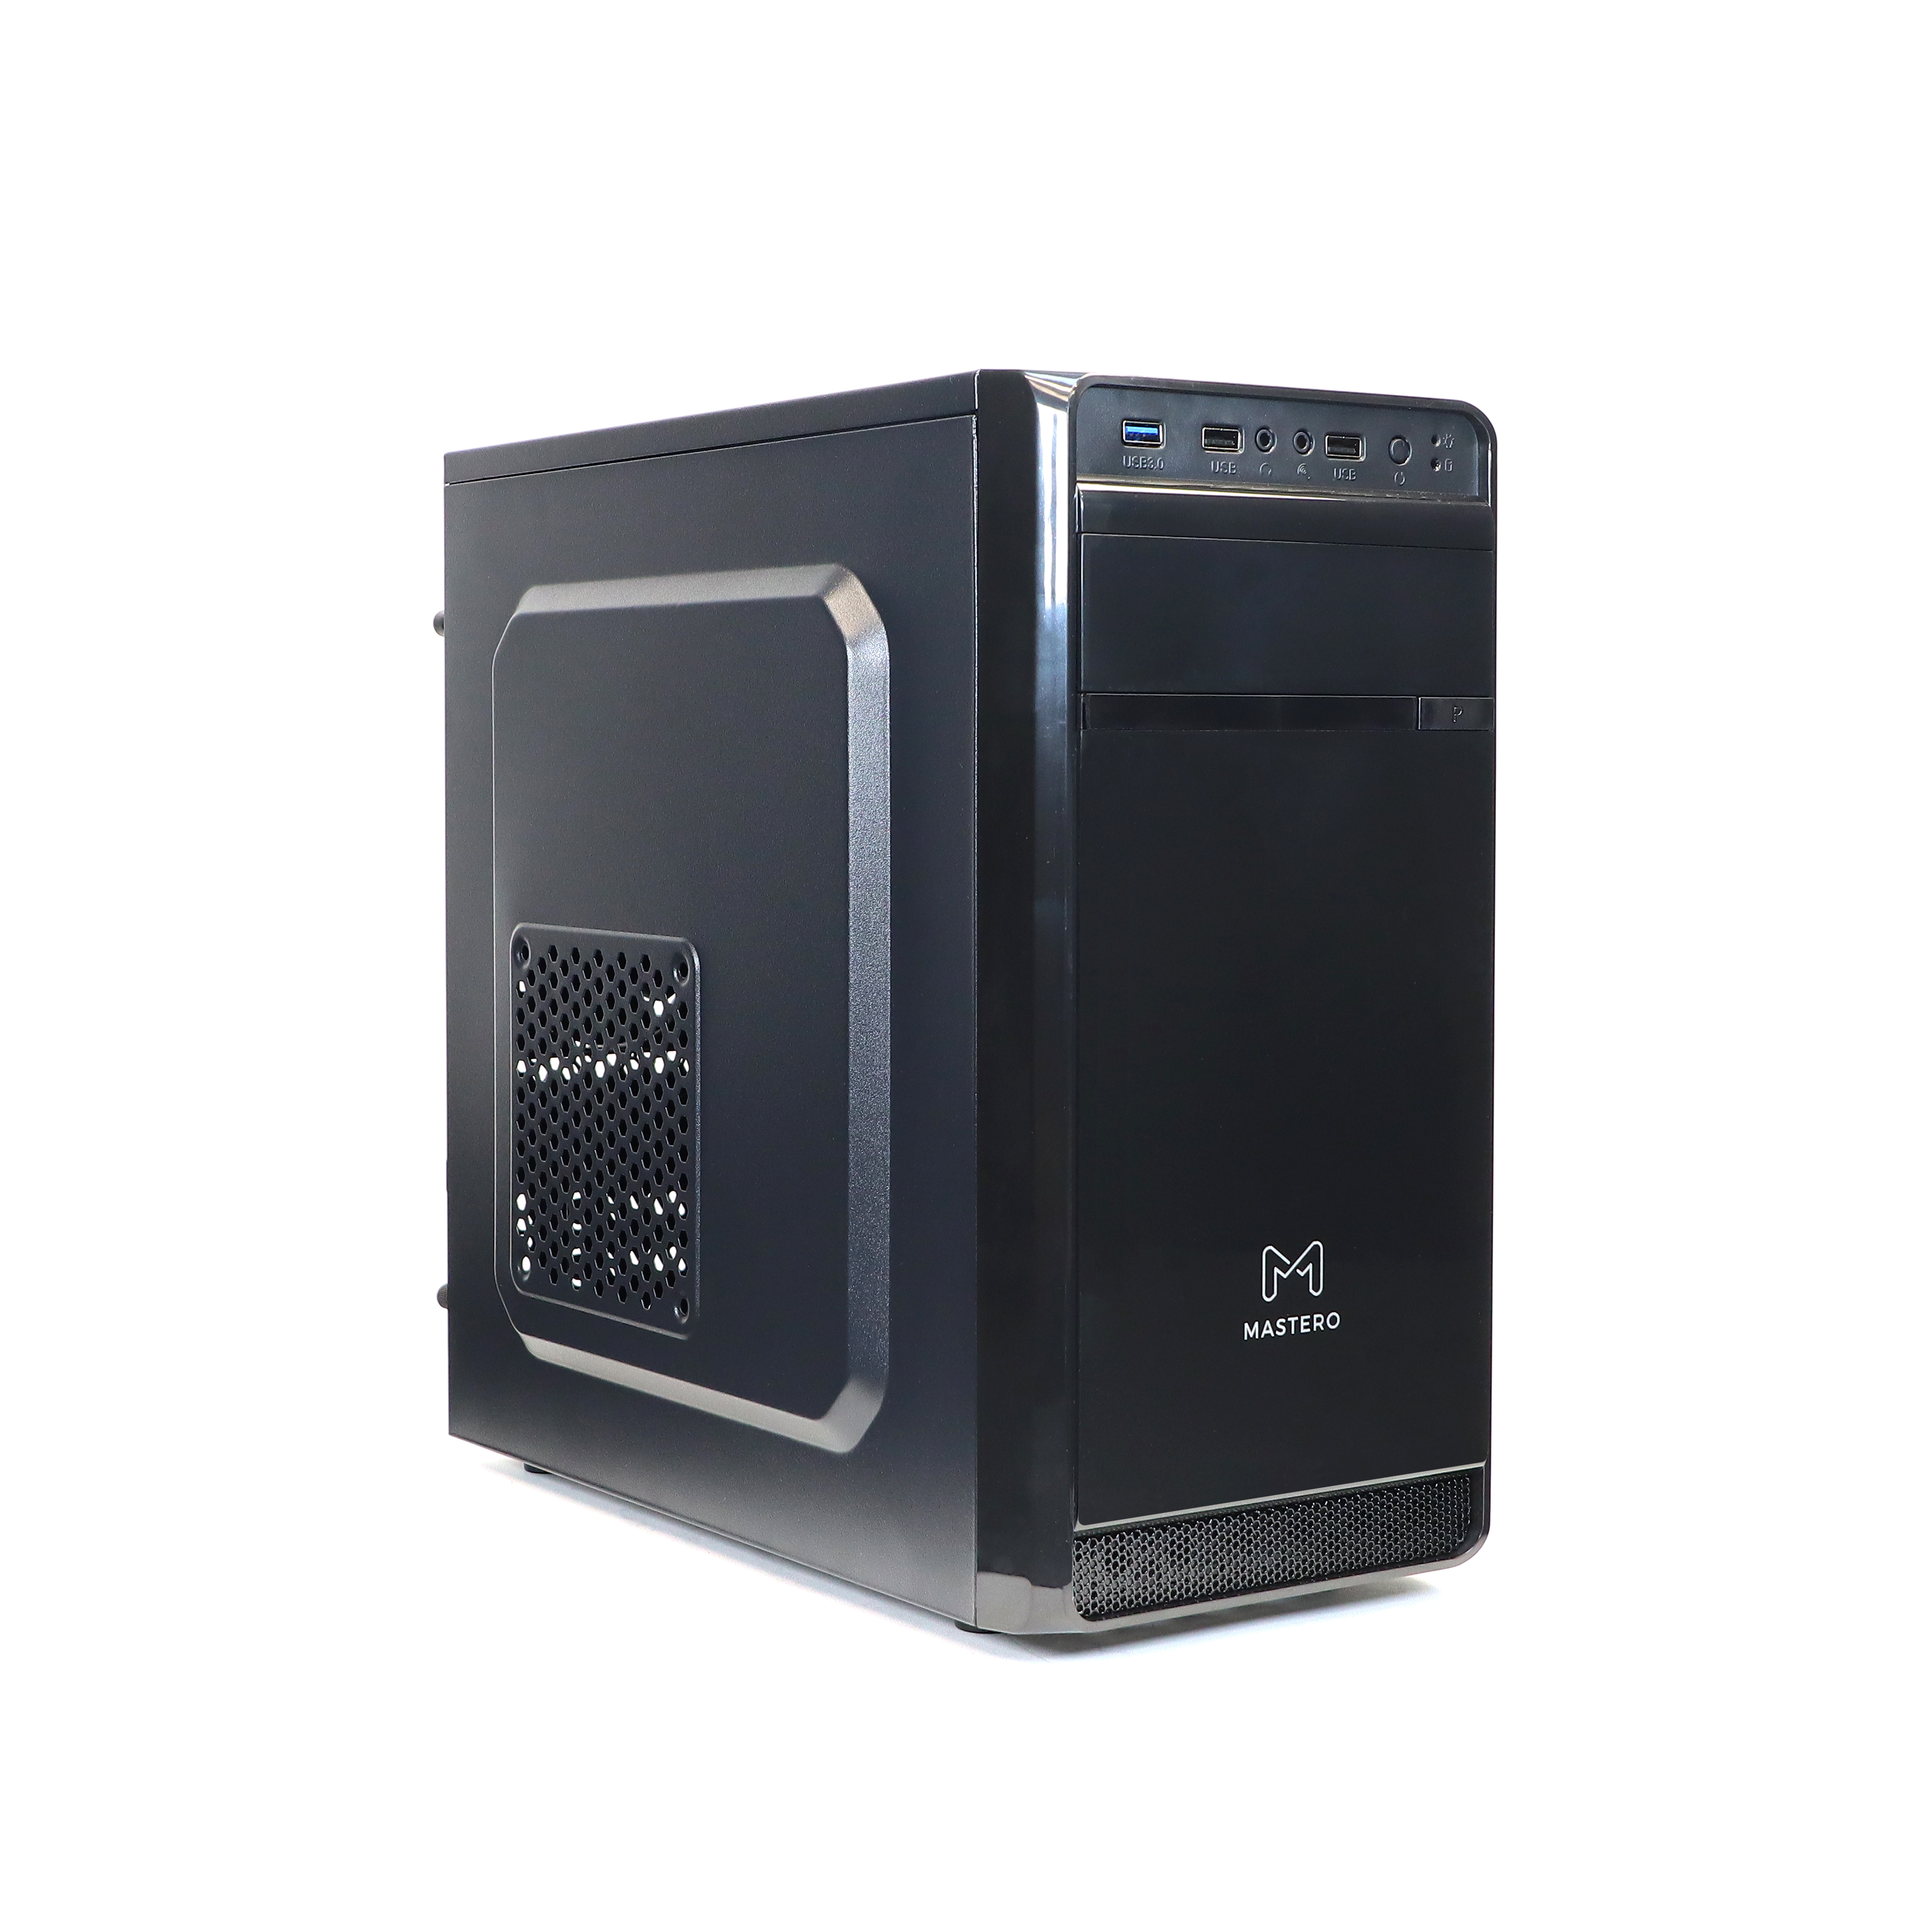 Корпус Mastero BCM-06, mATX, Mini-Tower, USB 3.0, черный, 450 Вт (MS-BCM-06-450W-FB)